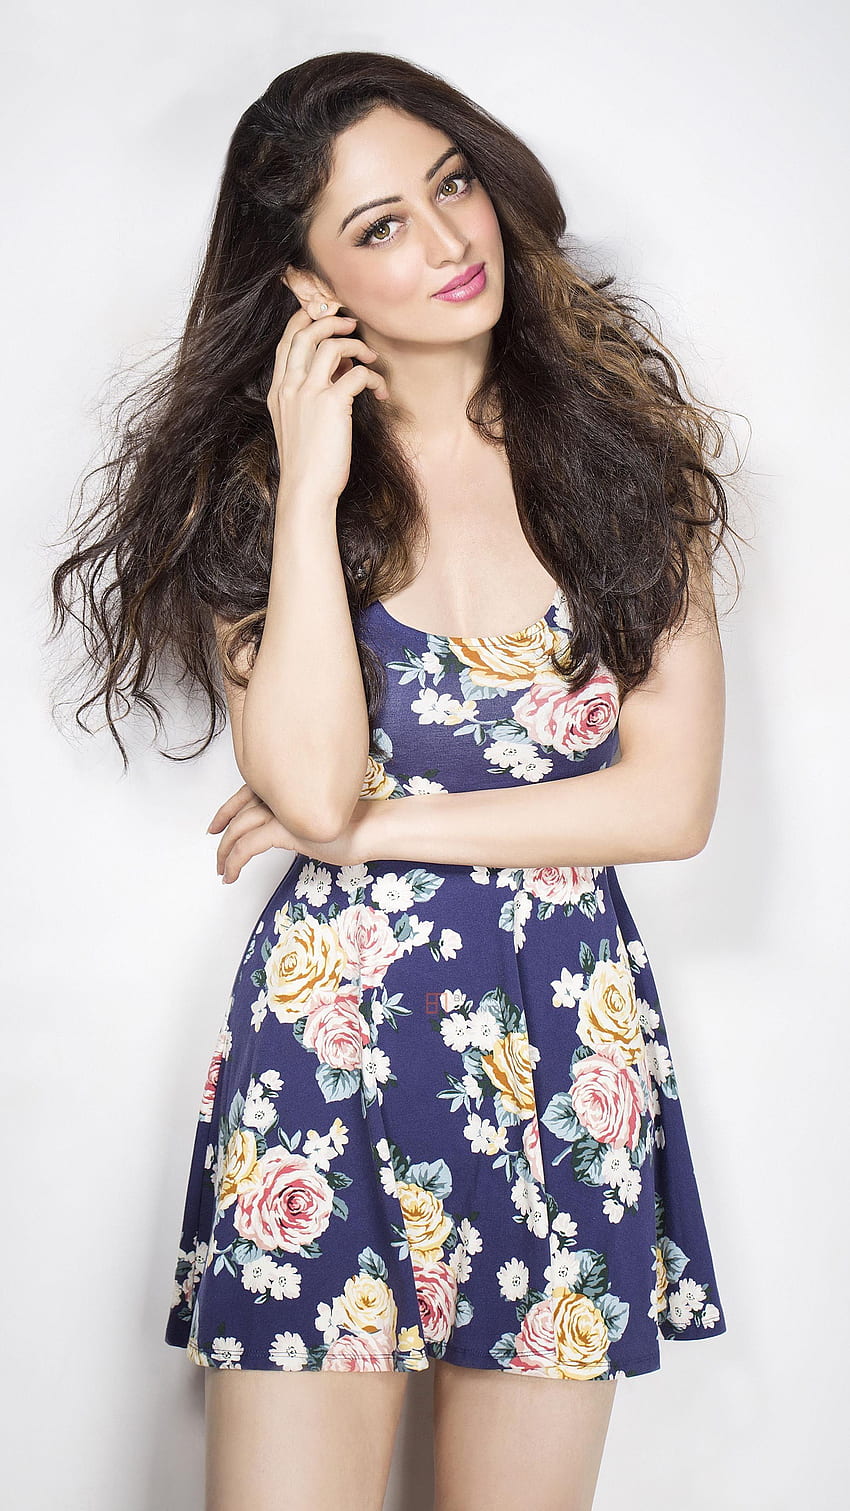 Sandeepa Dhar, actriz de Bollywood, modelo fondo de pantalla del teléfono